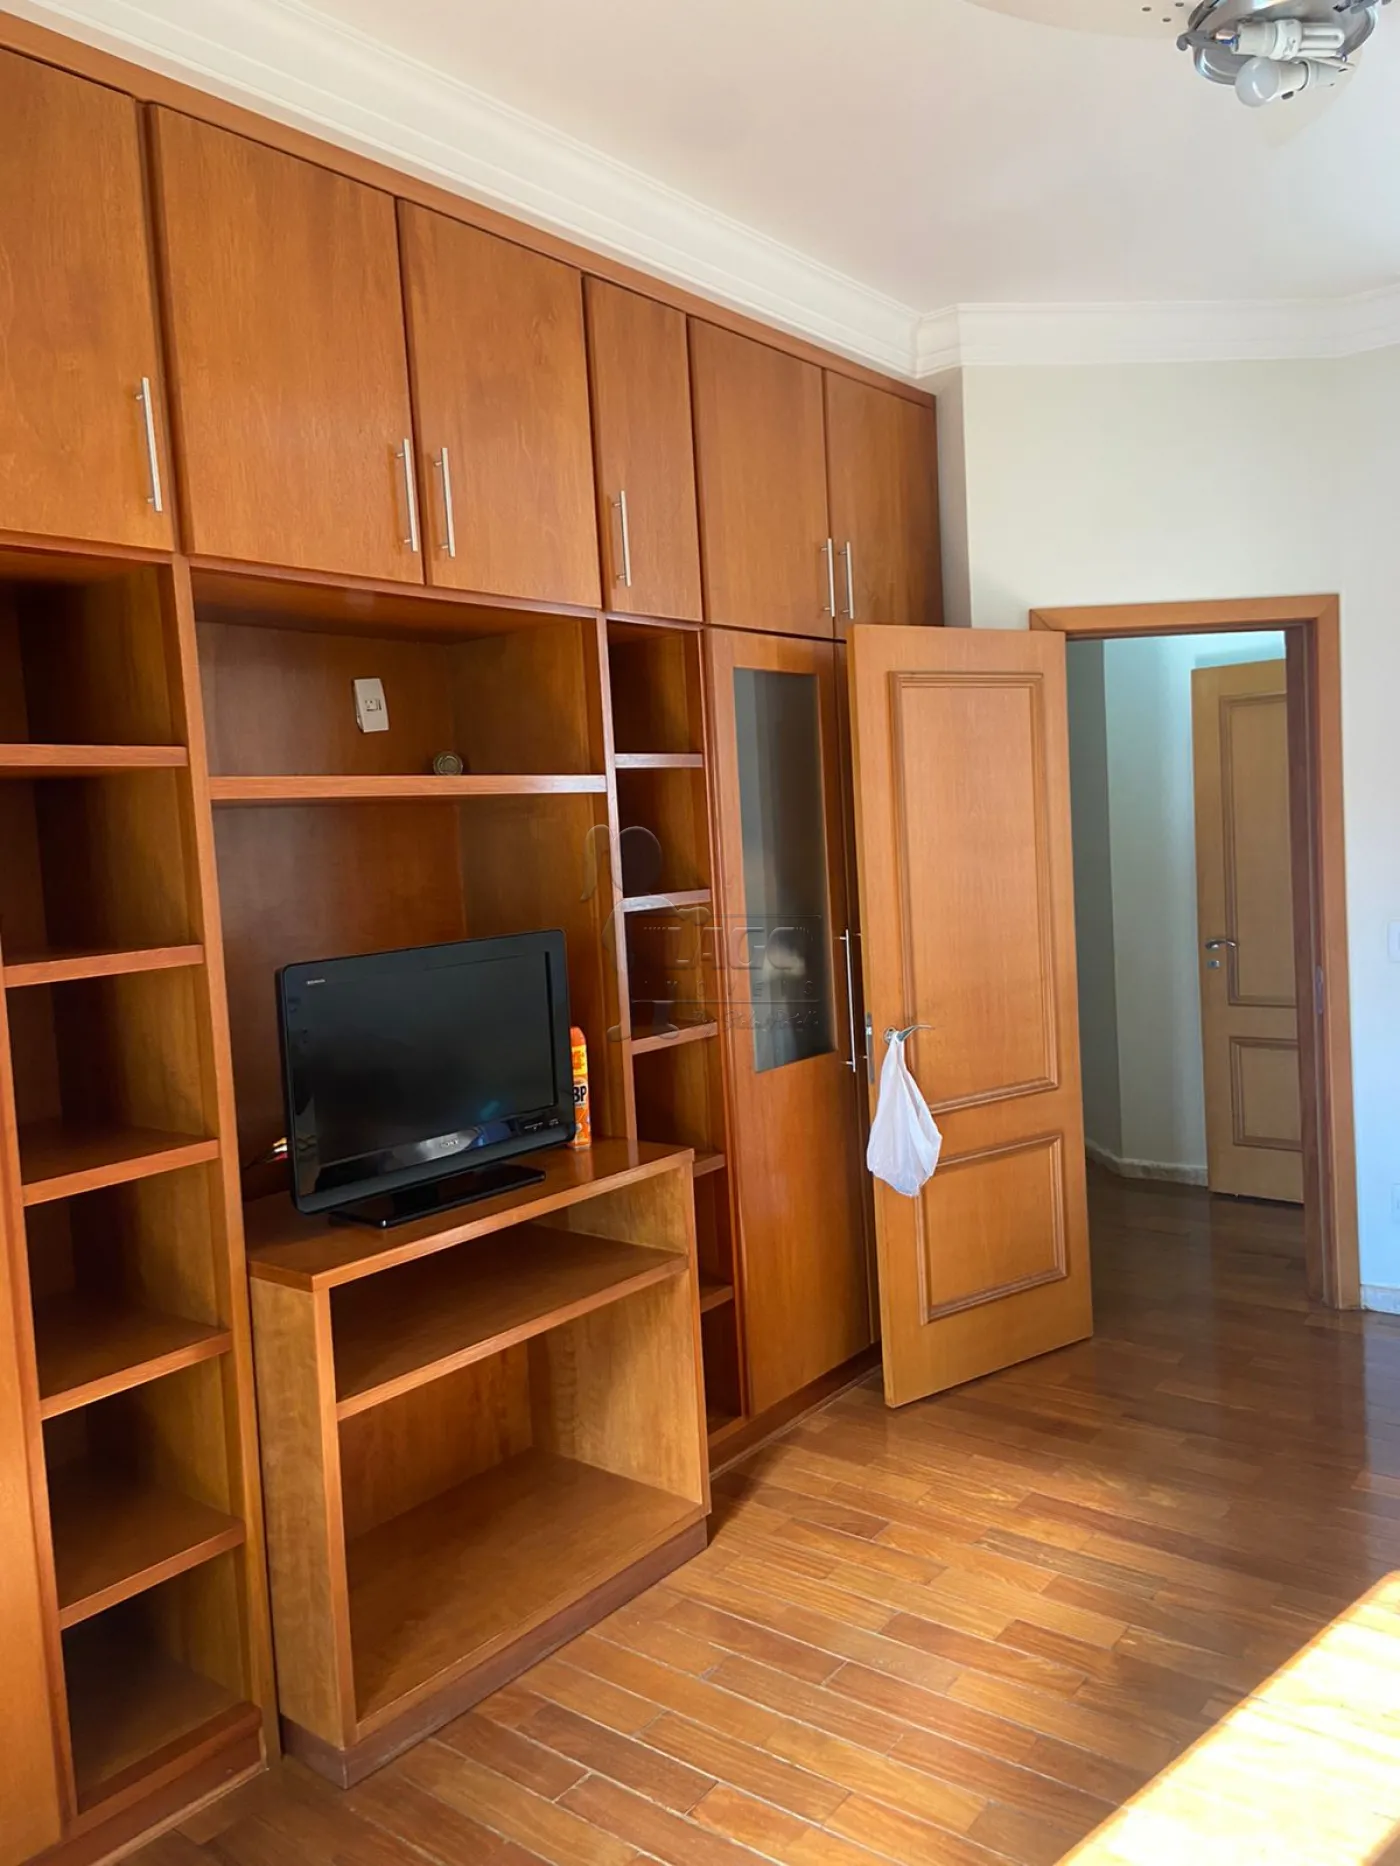 Comprar Apartamentos / Padrão em Sertãozinho R$ 945.000,00 - Foto 5